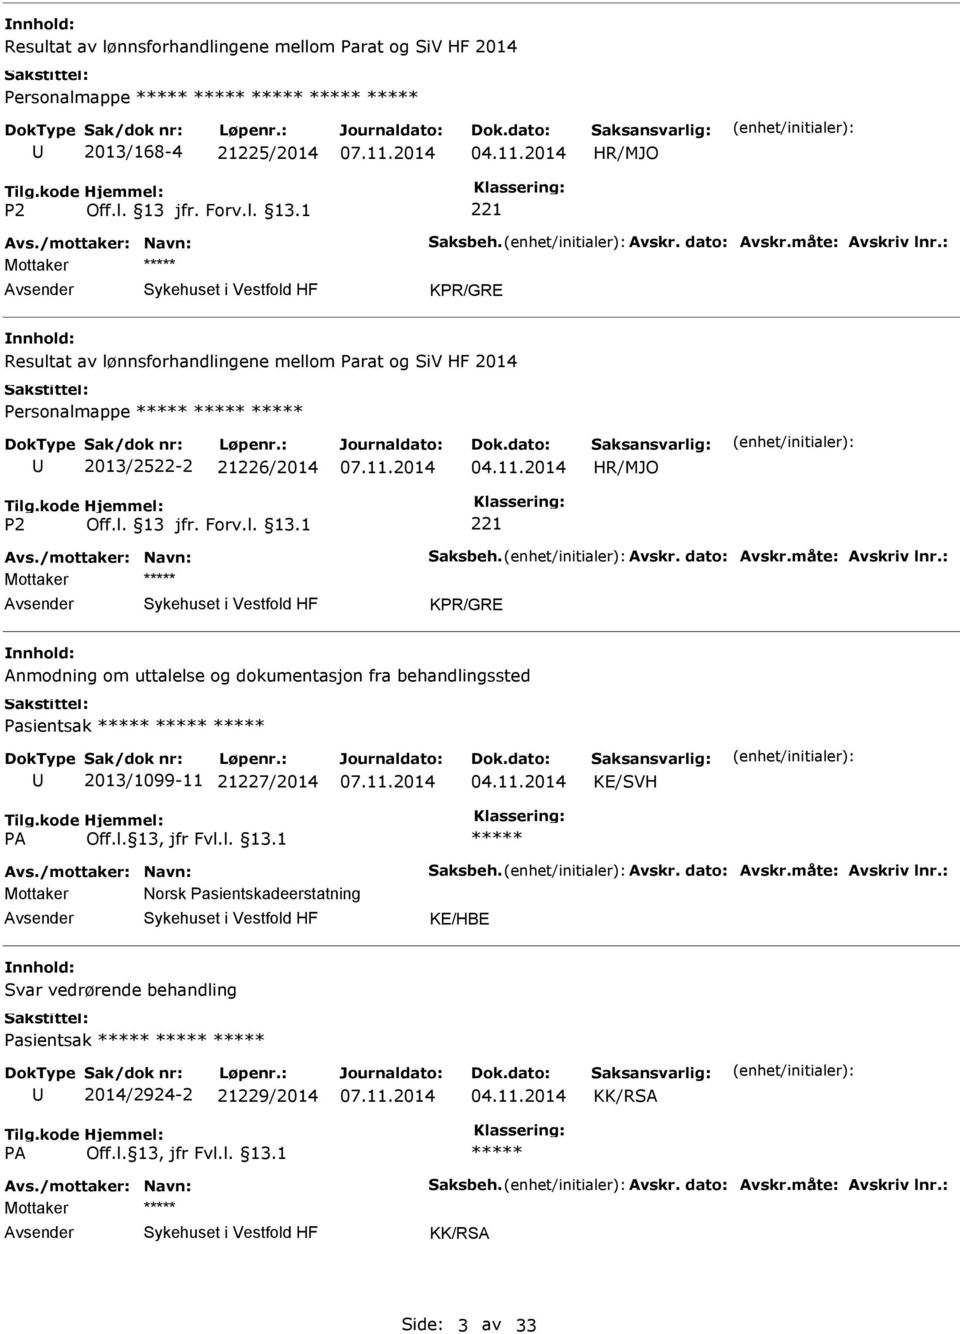 : Anmodning om uttalelse og dokumentasjon fra behandlingssted Pasientsak 2013/1099-11 21227/2014 KE/SVH Avs./mottaker: Navn: Saksbeh. Avskr. dato: Avskr.